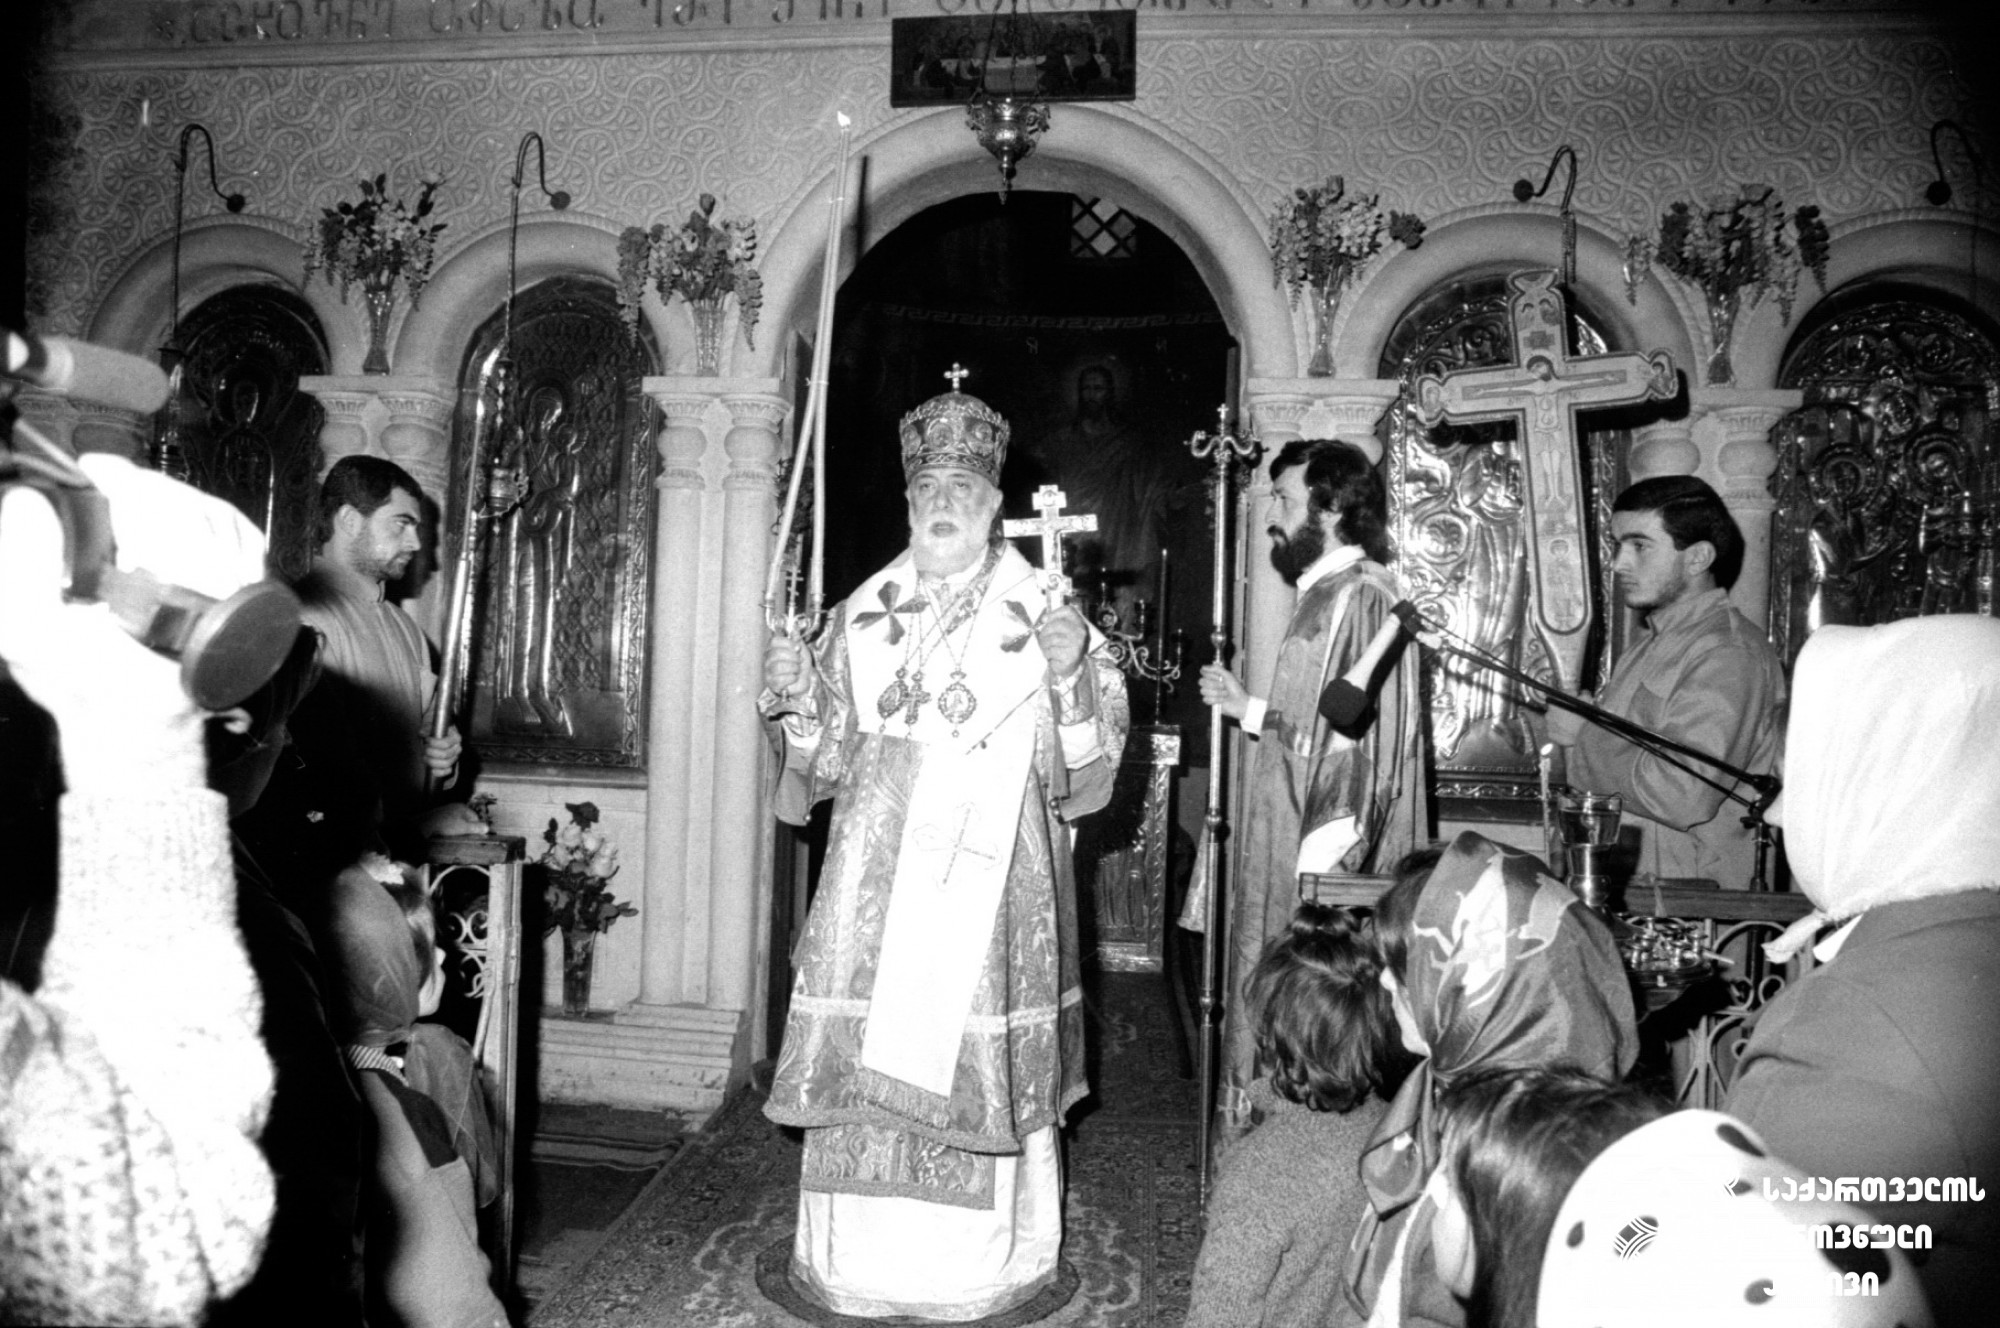 სრულიად საქართველოს კათოლიკოს-პატრიარქ ილია II-ის წირვა სოხუმის საკათედრო ტაძარში <br>
1990 წელი <br>
ფოტოს ავტორი ბ. სოკოლოვი <br>
Mass of Catholicos-Patriarch of All Georgia Ilia II in Sukhumi Cathedral <br>
1990 <br> 
Photo by b. Sokolov